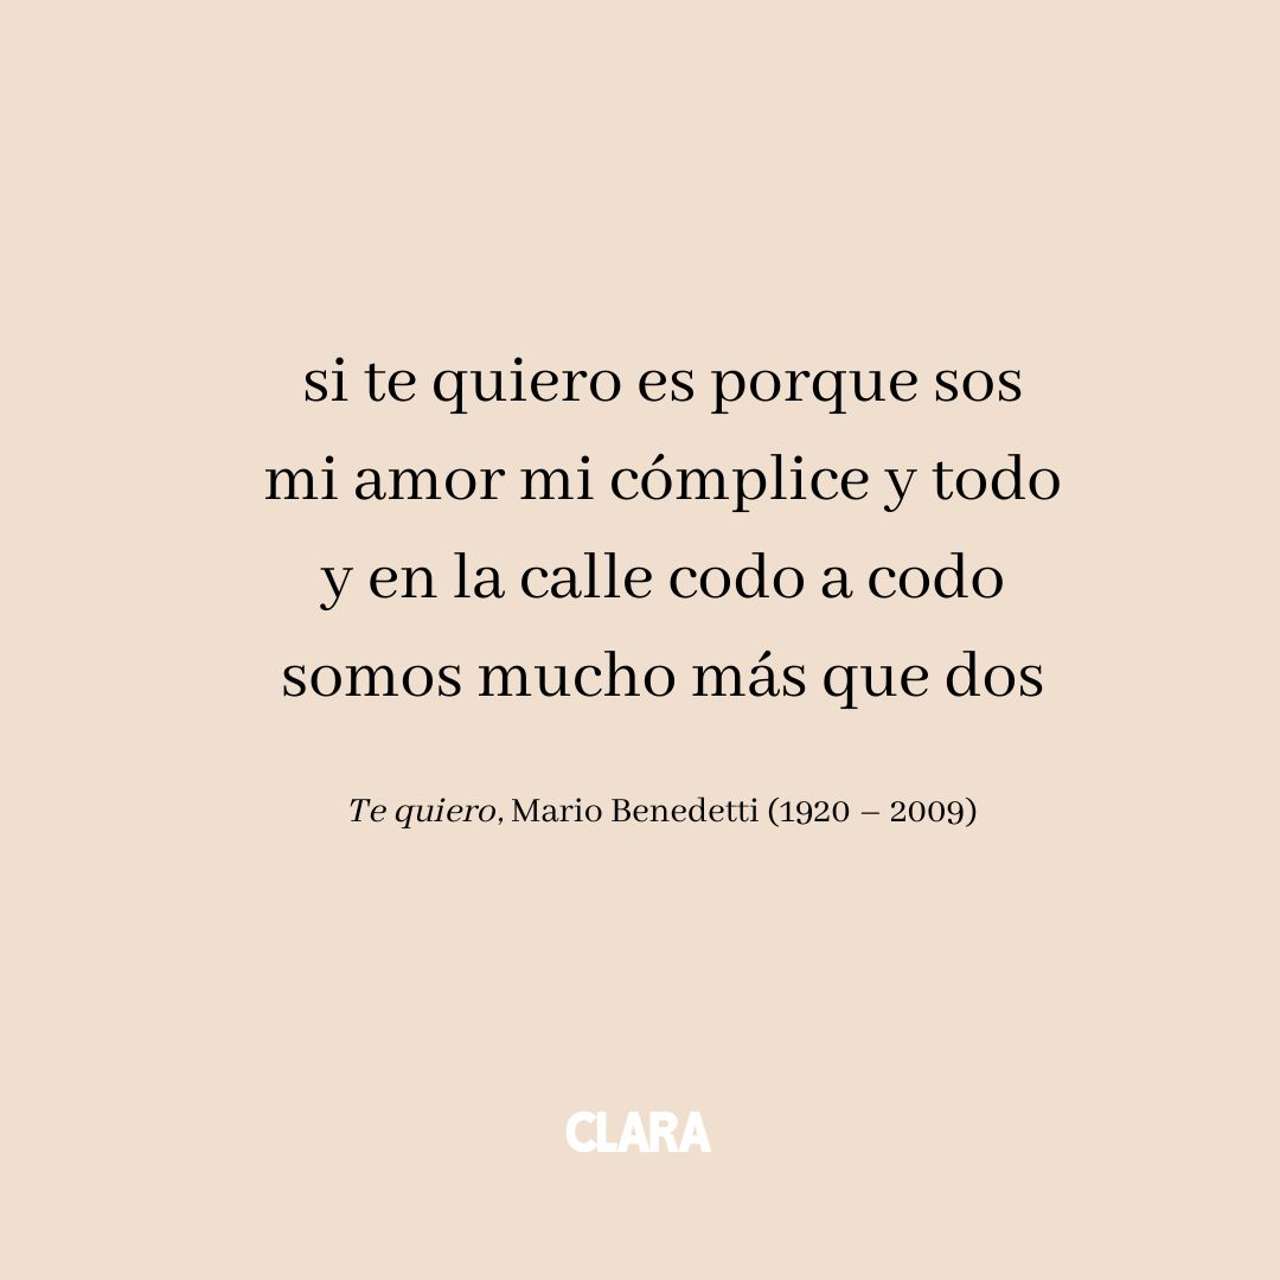 Si te quiero es porque sos: Descubre los versos más románticos de la poesía española